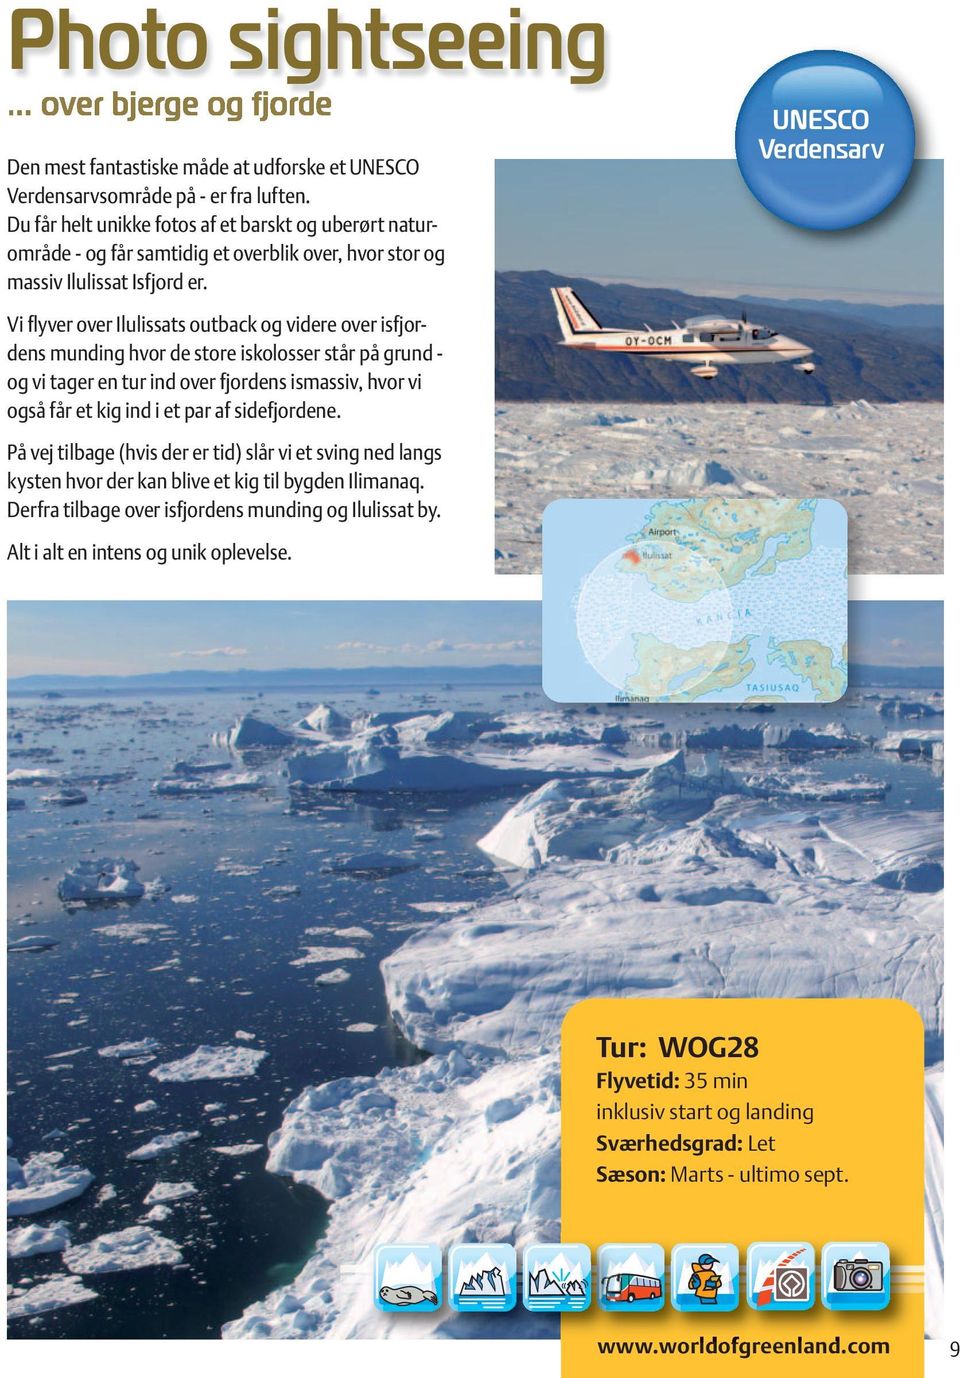 UNESCO Verdensarv Vi flyver over Ilulissats outback og videre over isfjordens munding hvor de store iskolosser står på grund - og vi tager en tur ind over fjordens ismassiv, hvor vi også får et kig